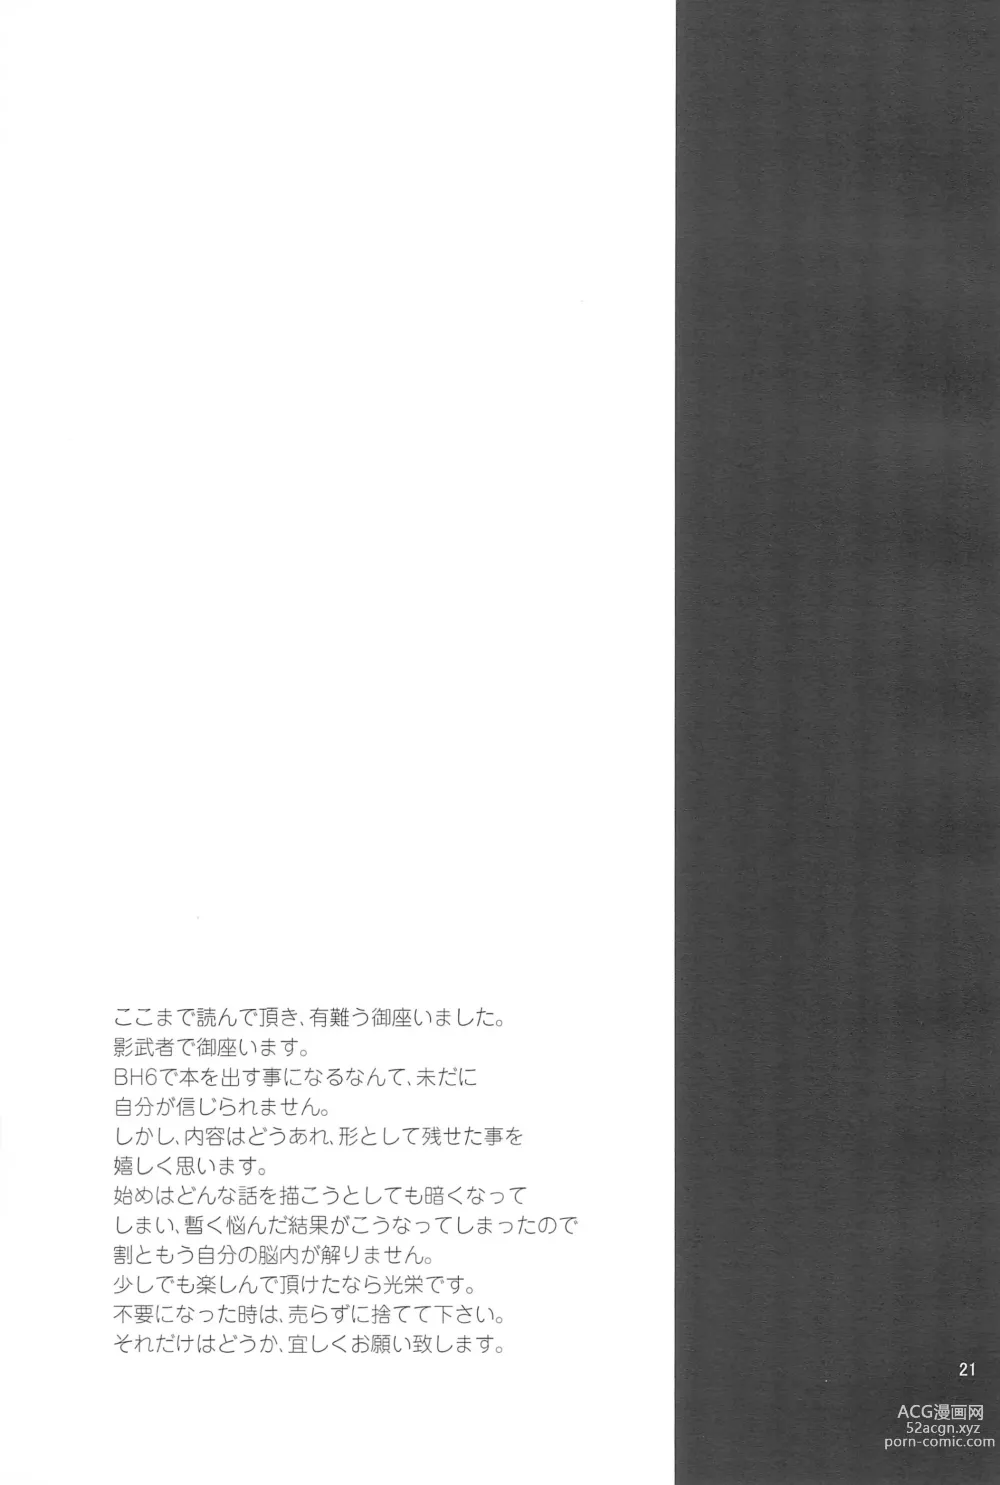 Page 21 of doujinshi Hiro-kun no Hajimete.